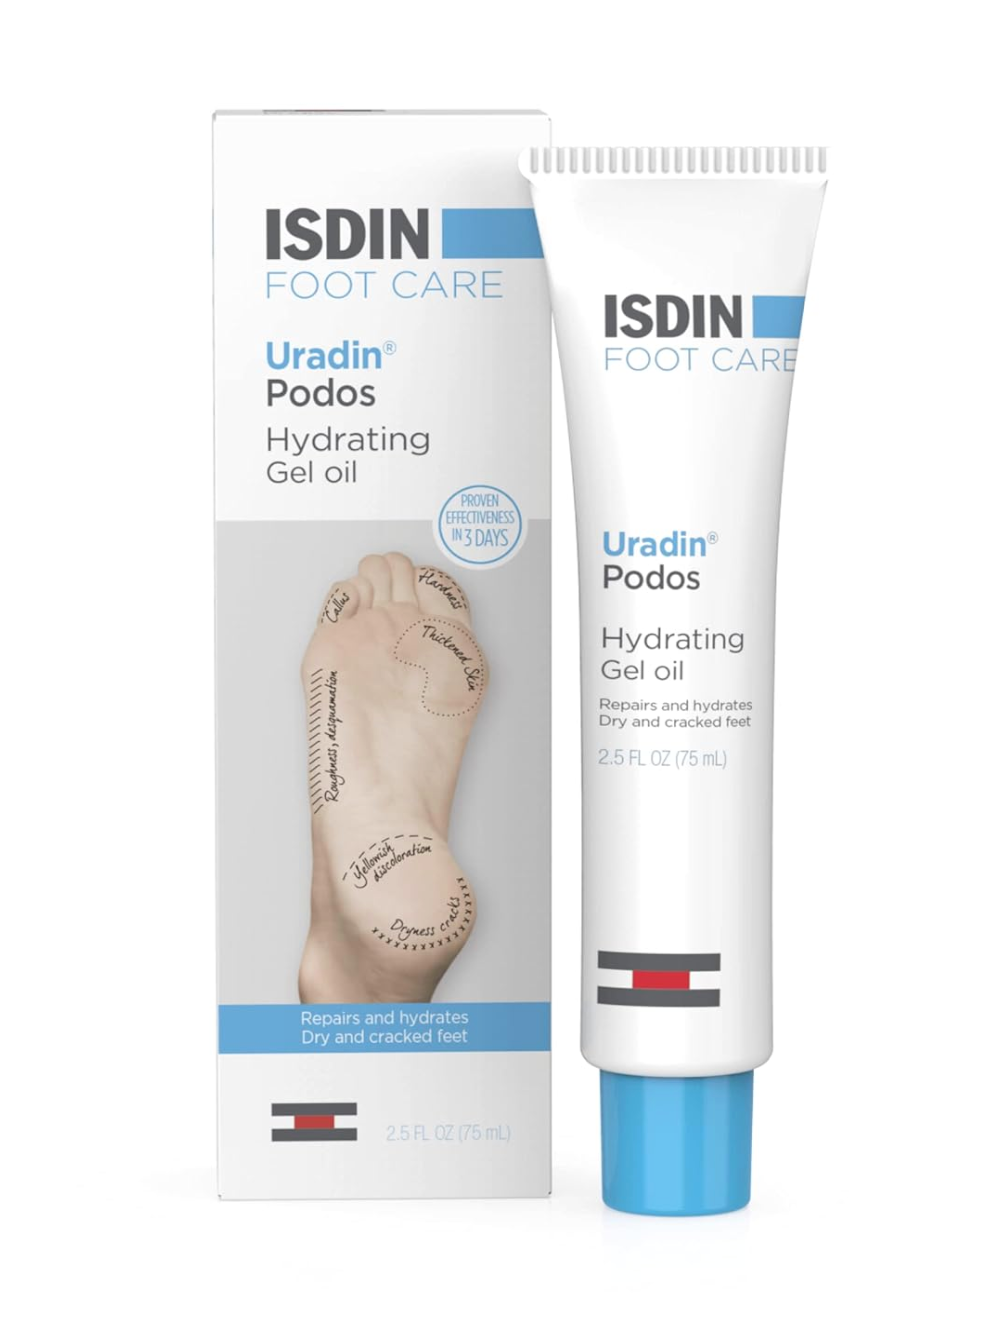 ISDIN Uradin Podos Gel Oil (Foot Care)